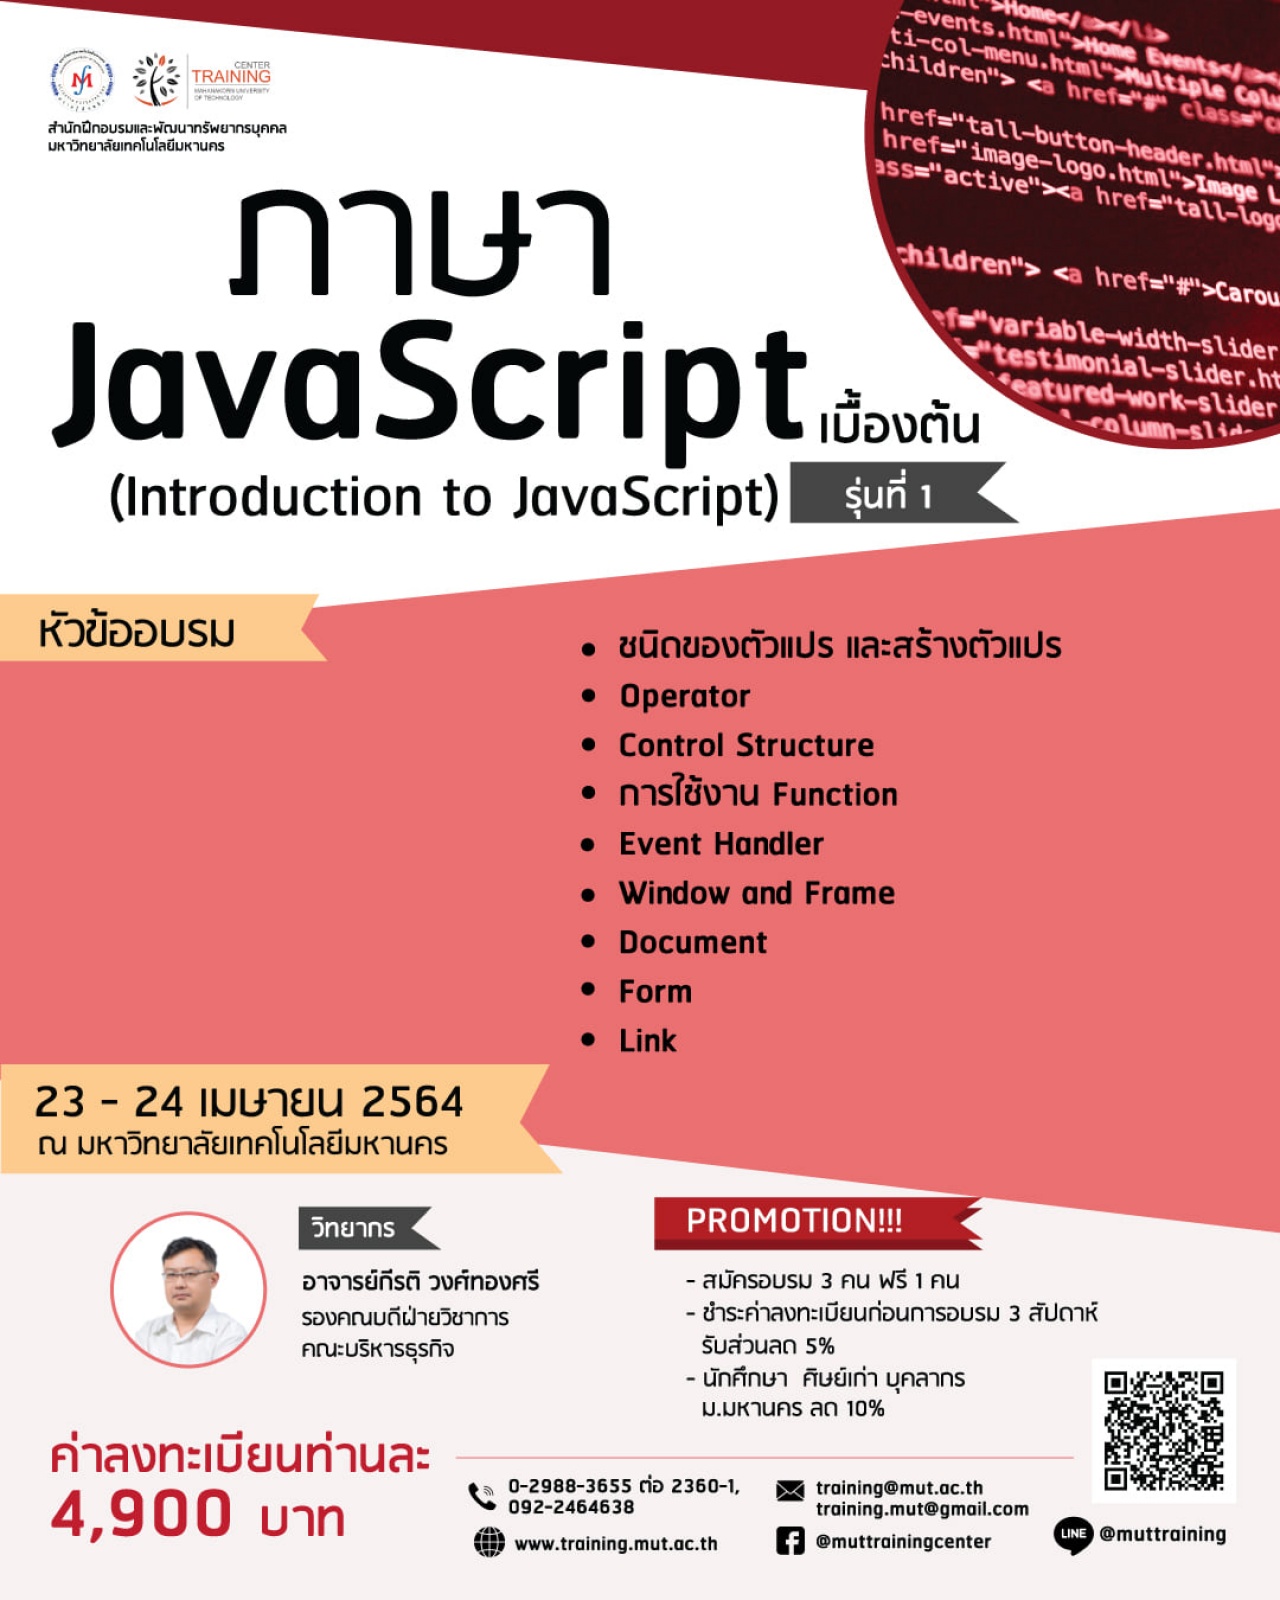 โครงการอบรม ภาษา JavaScript เบื้องต้น (Introduction to JavaScript) รุ่นที่ 1